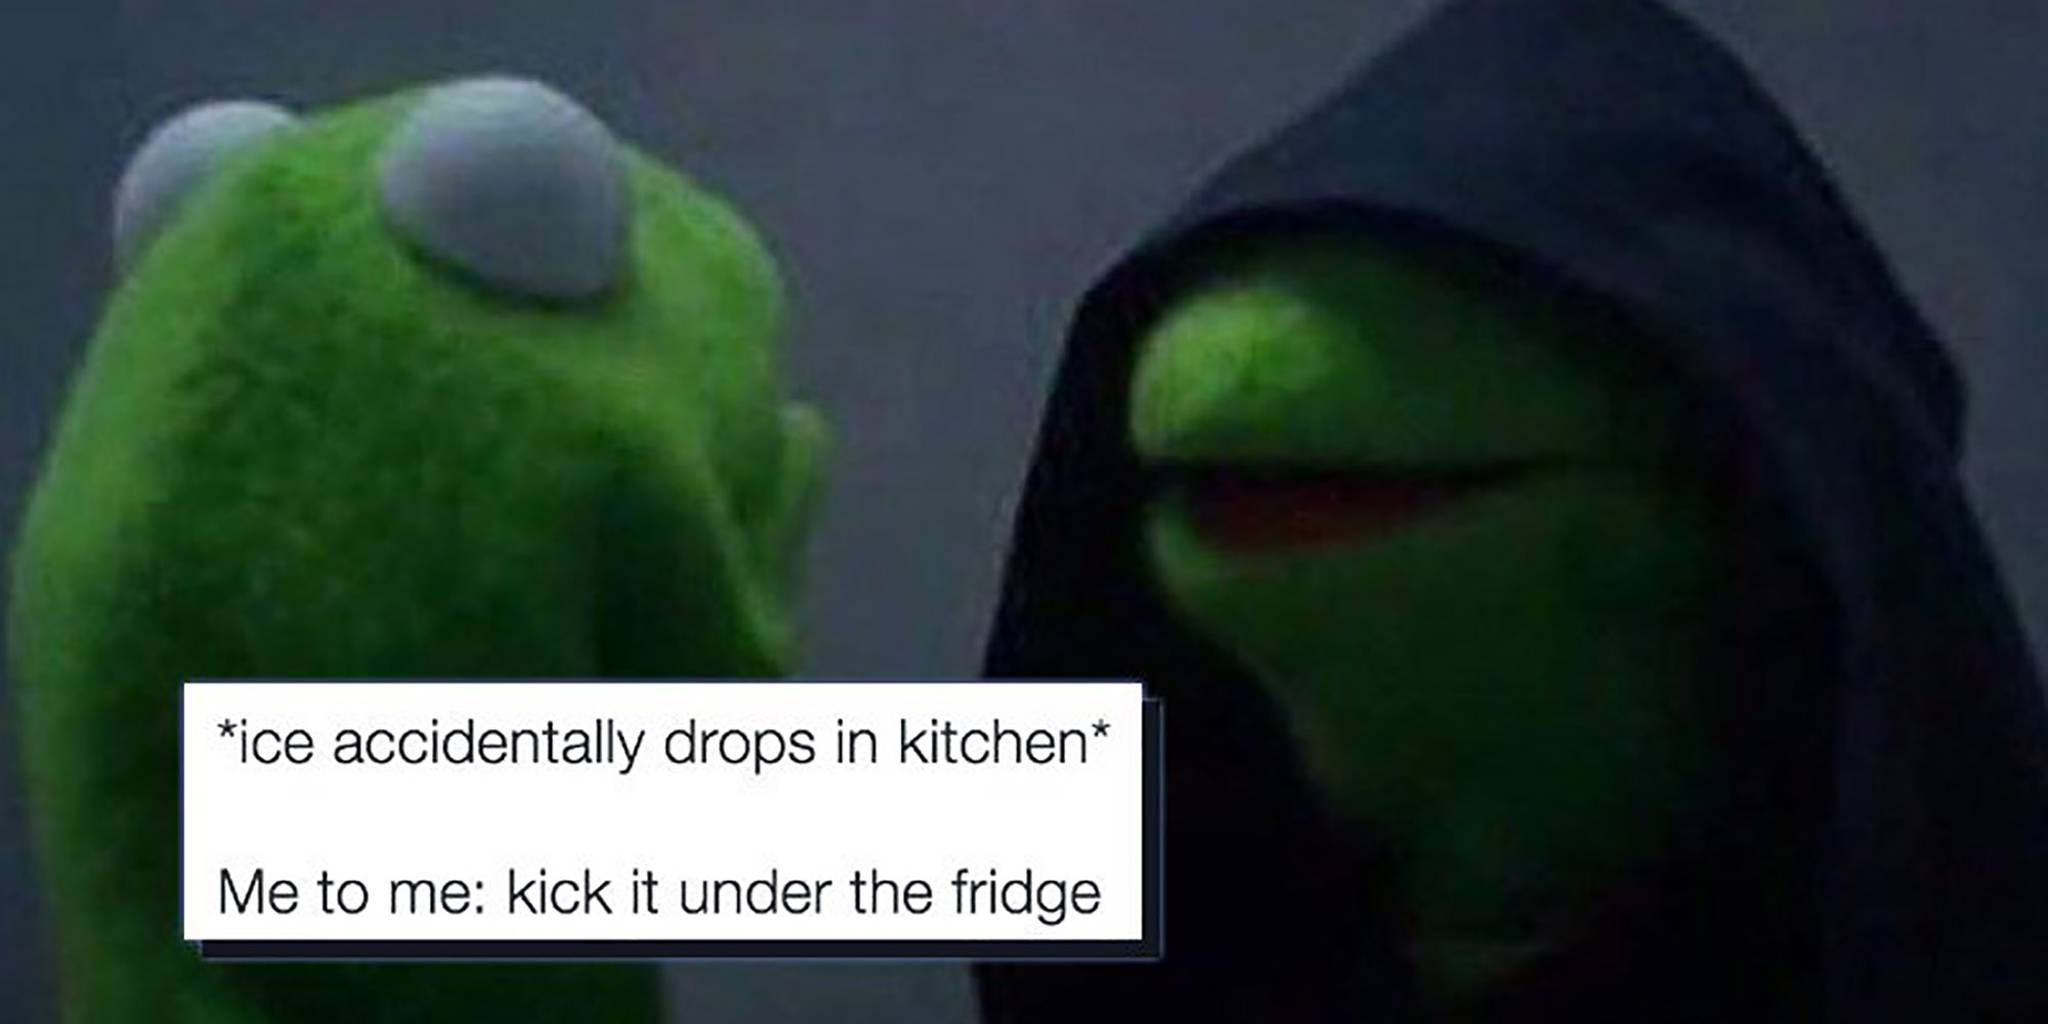 The Evil Kermit Meme Channels Your Darkest Desires. helpful non helpful. da...